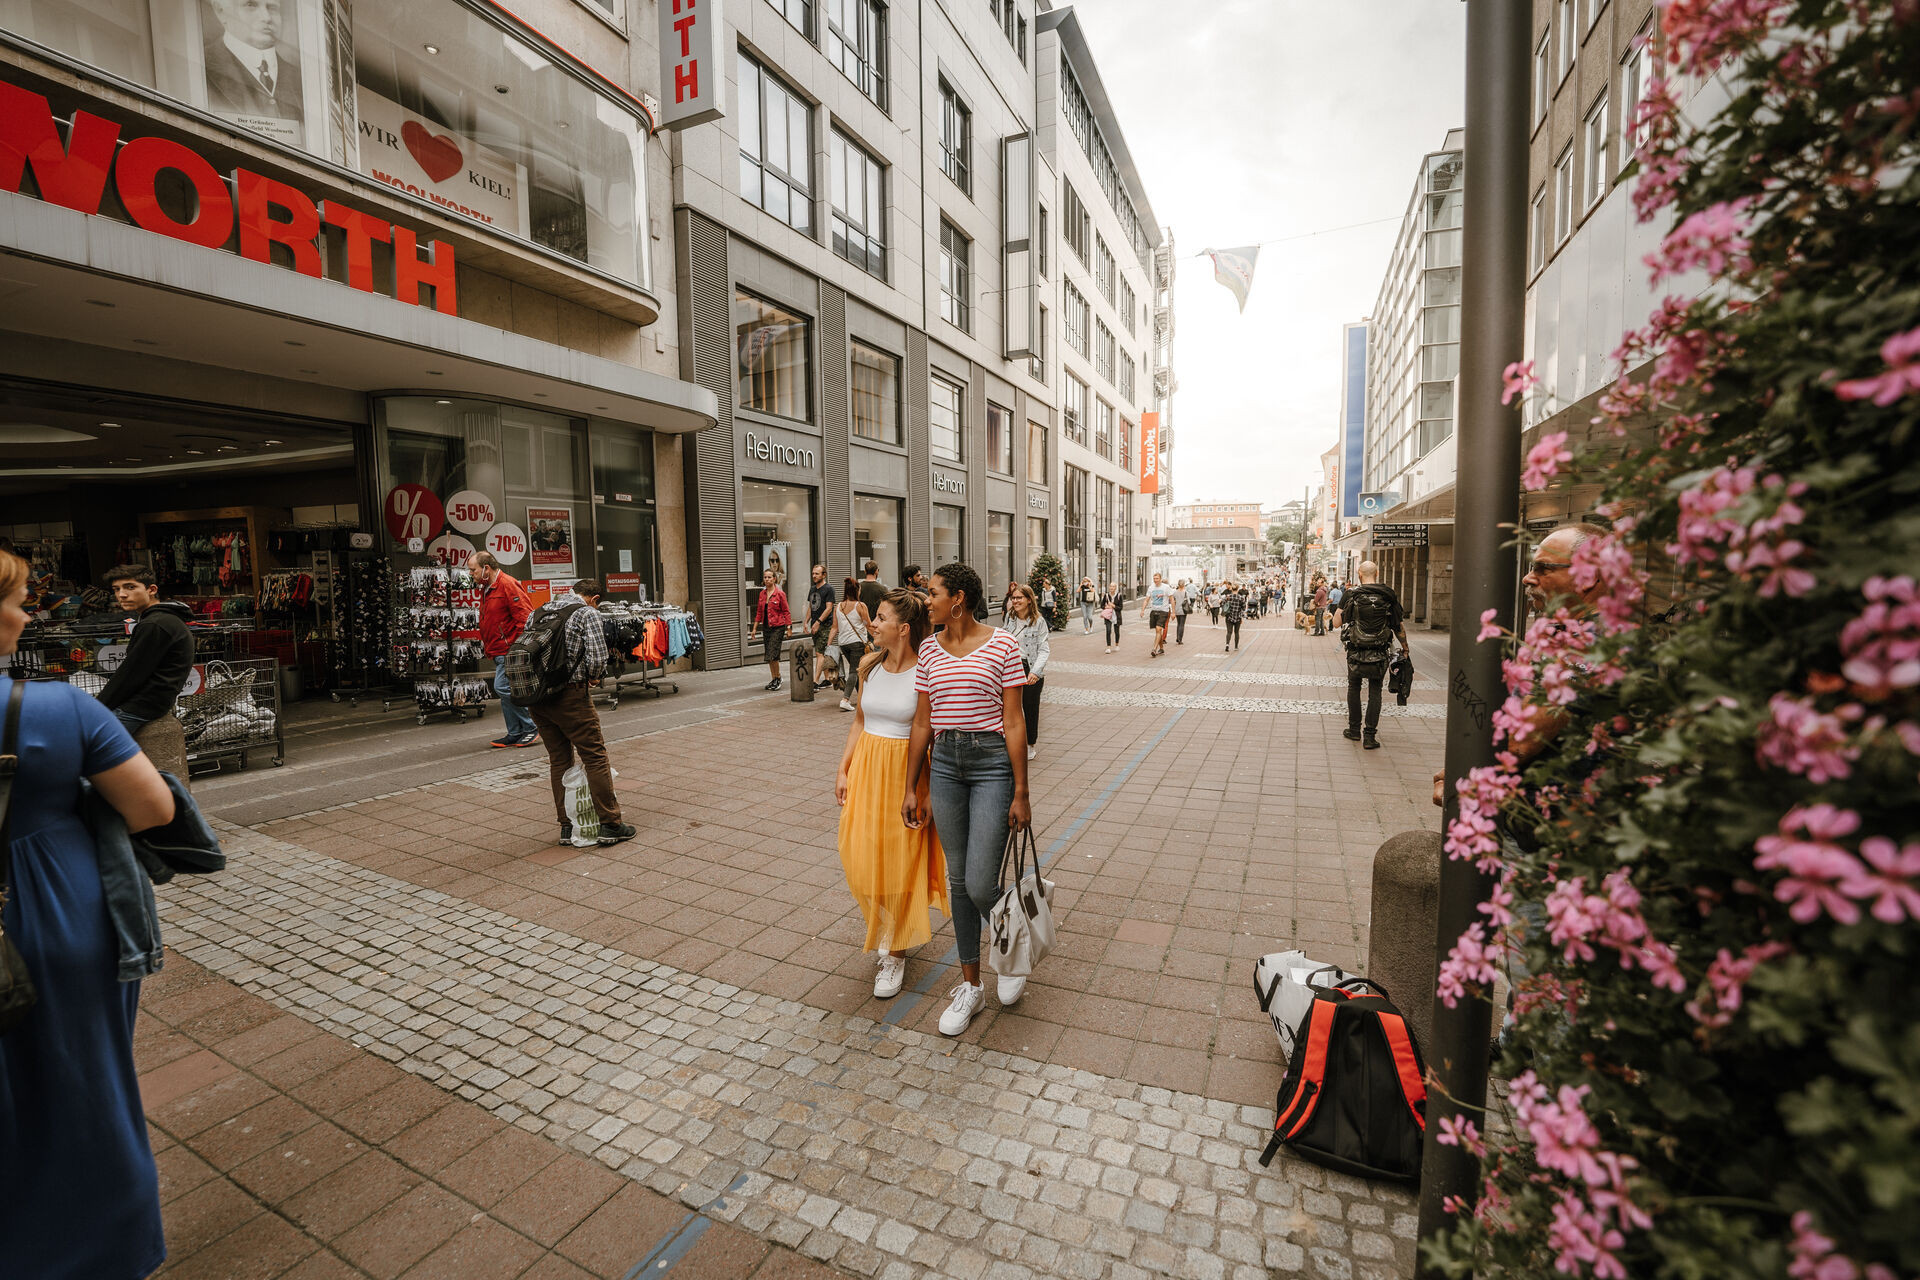  <a href="/kieler-foerde-entdecken/shopping/innenstadt">Schlendern Sie durch eine der ältesten Fußgängerzonen Deutschlands!</a>